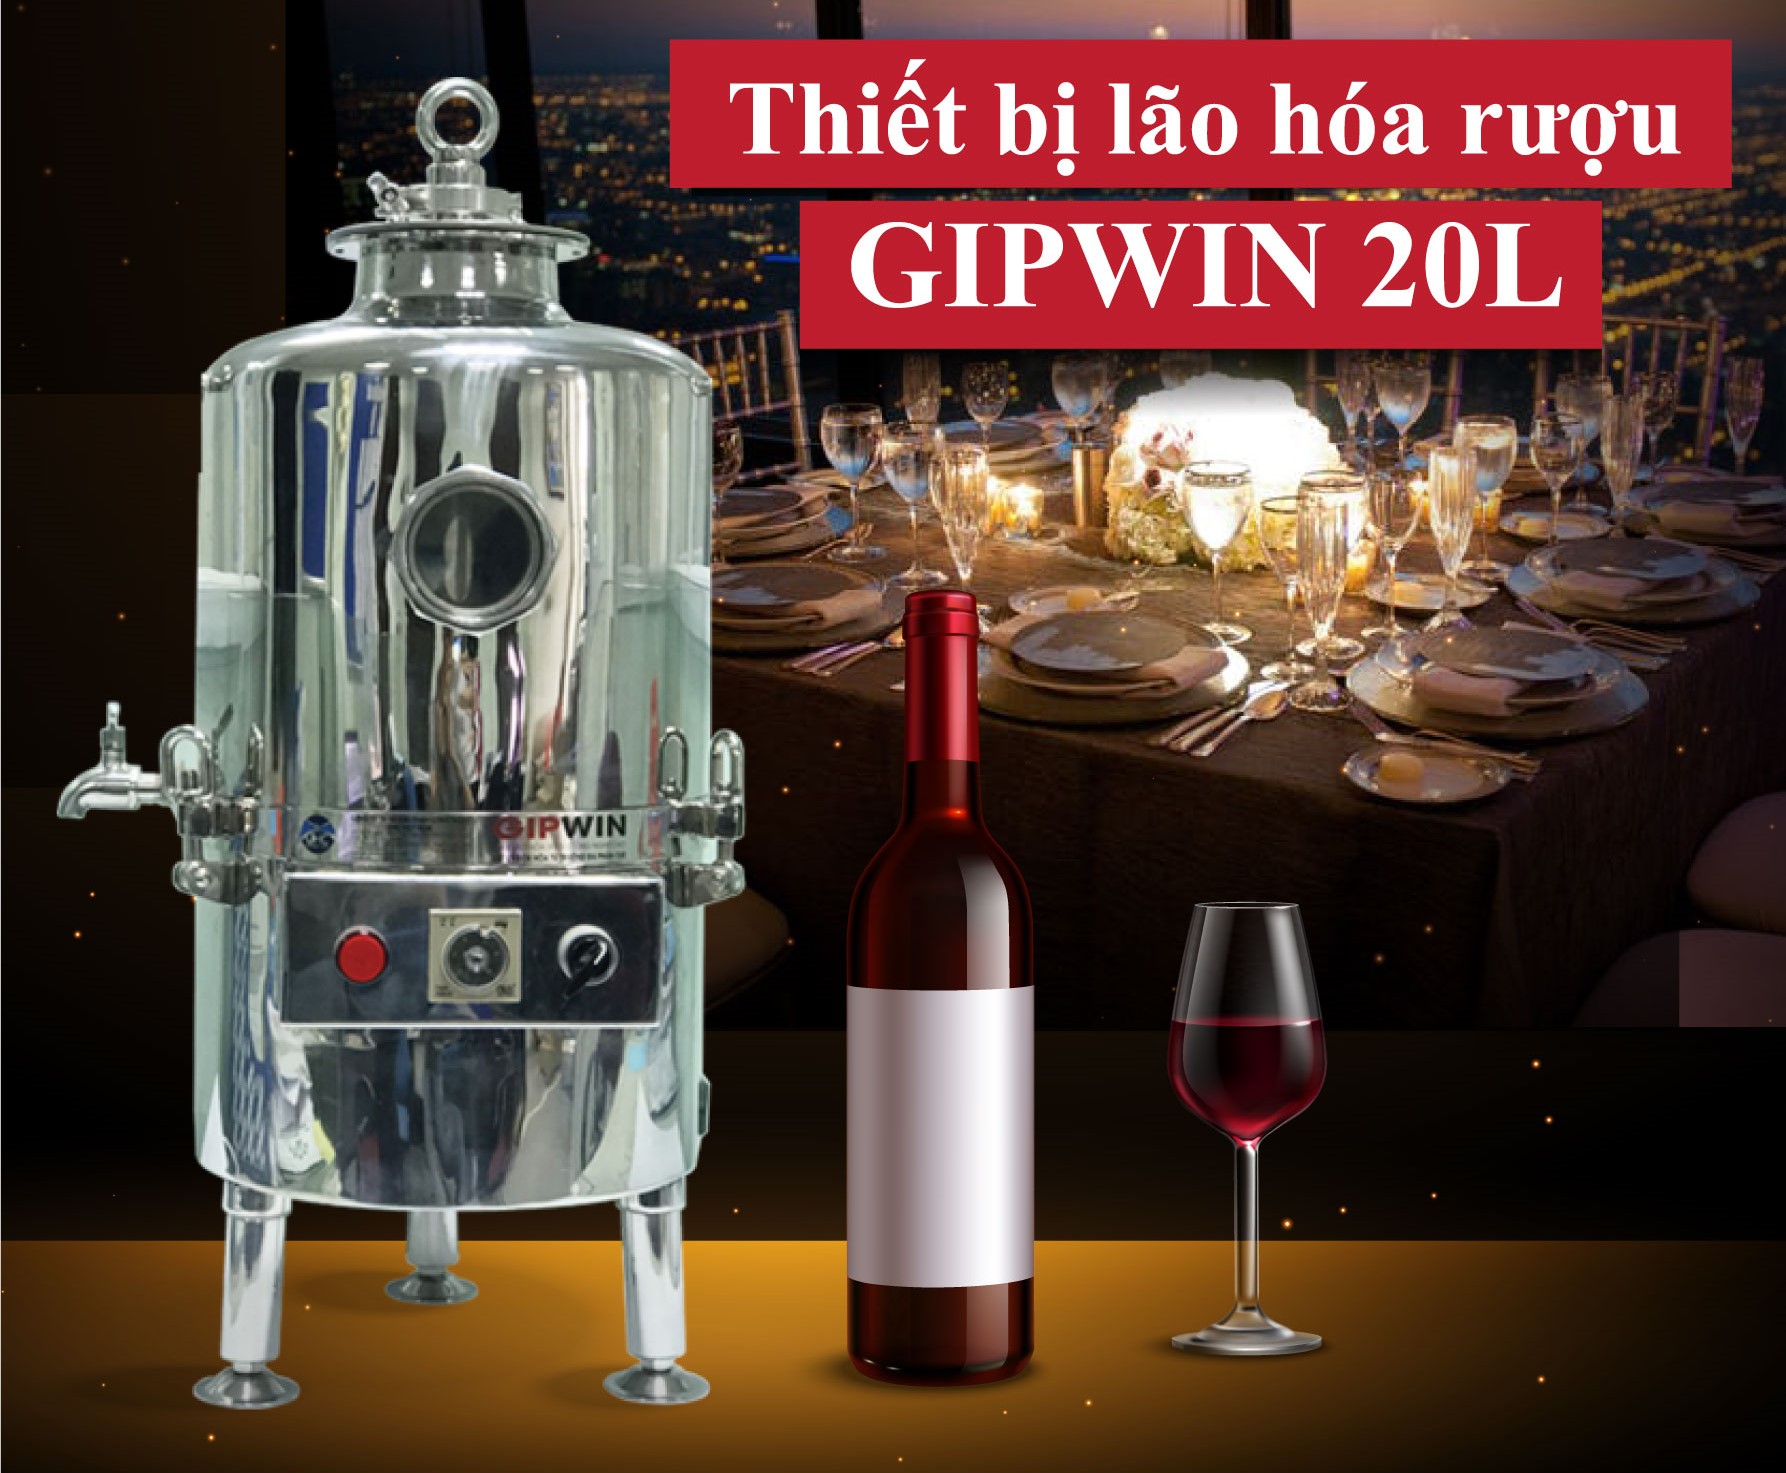 Thiết bị lão hóa rượu Gipwin giúp hạ độ rượu nhanh, an toàn.